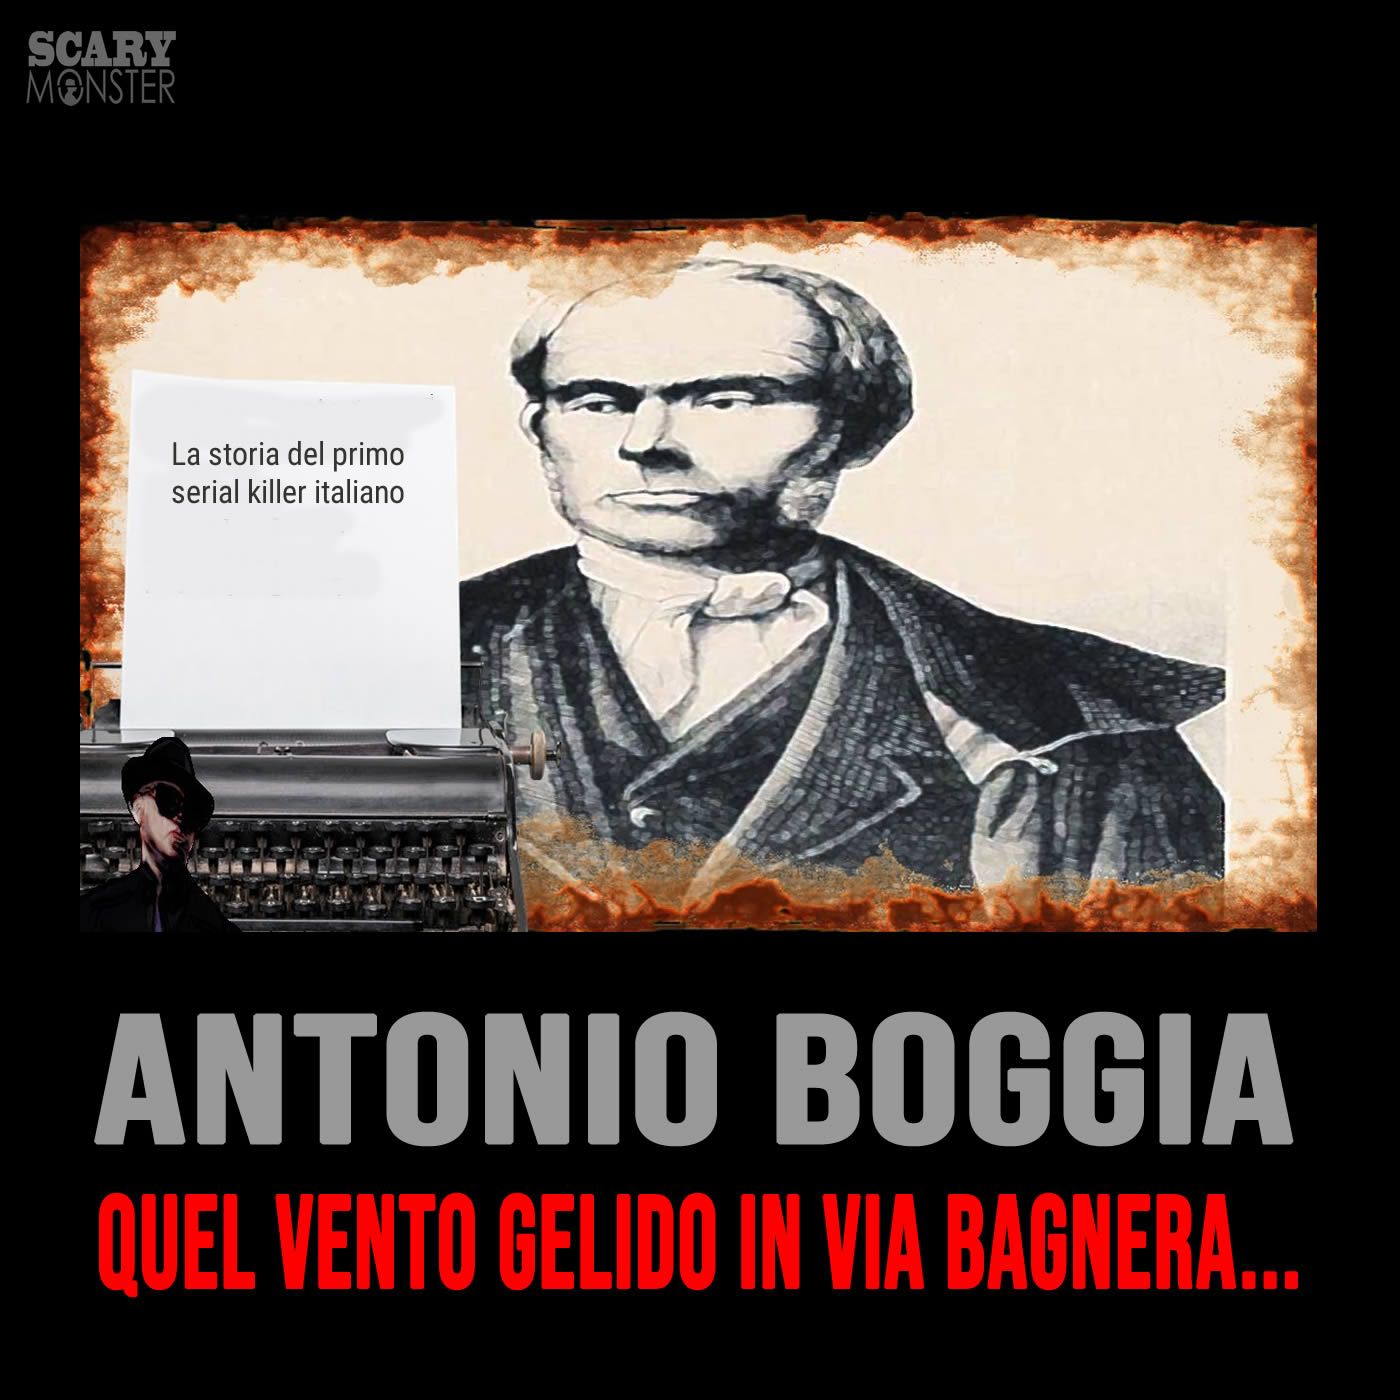 Antonio Boggia - Milano e quel vento gelido in via Bagnera...